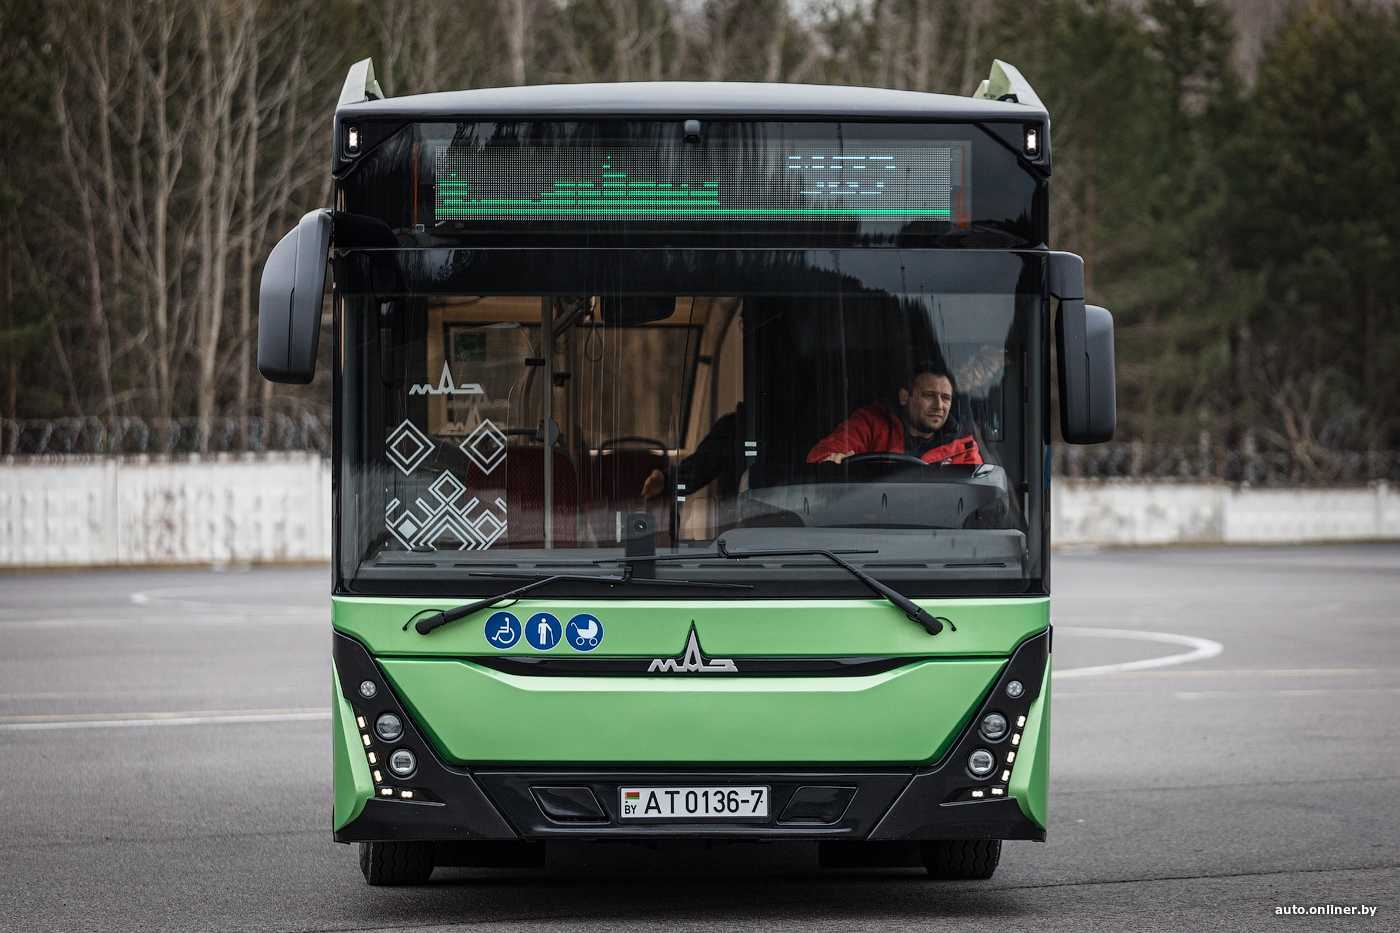 Автобус маз-206: фото, технические характеристики, видео